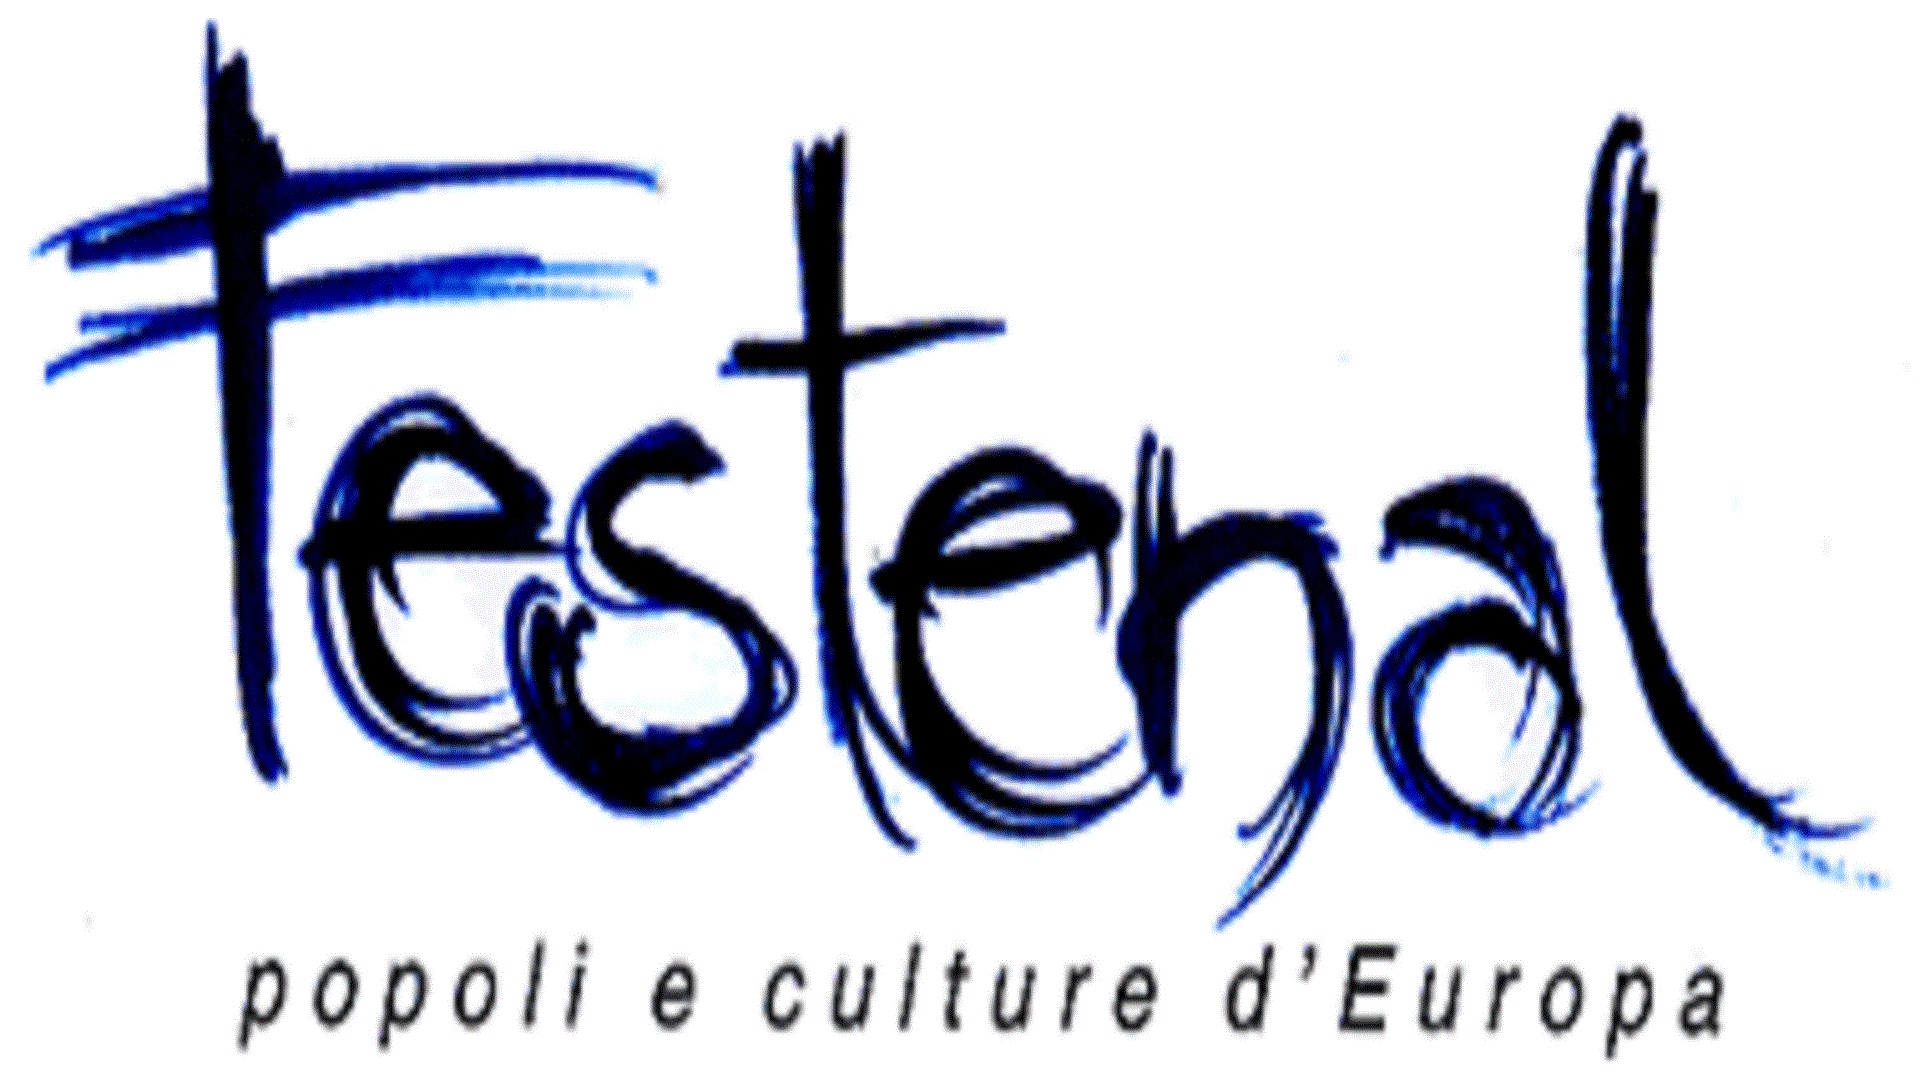 Festenal - popoli e cultura d'Europa